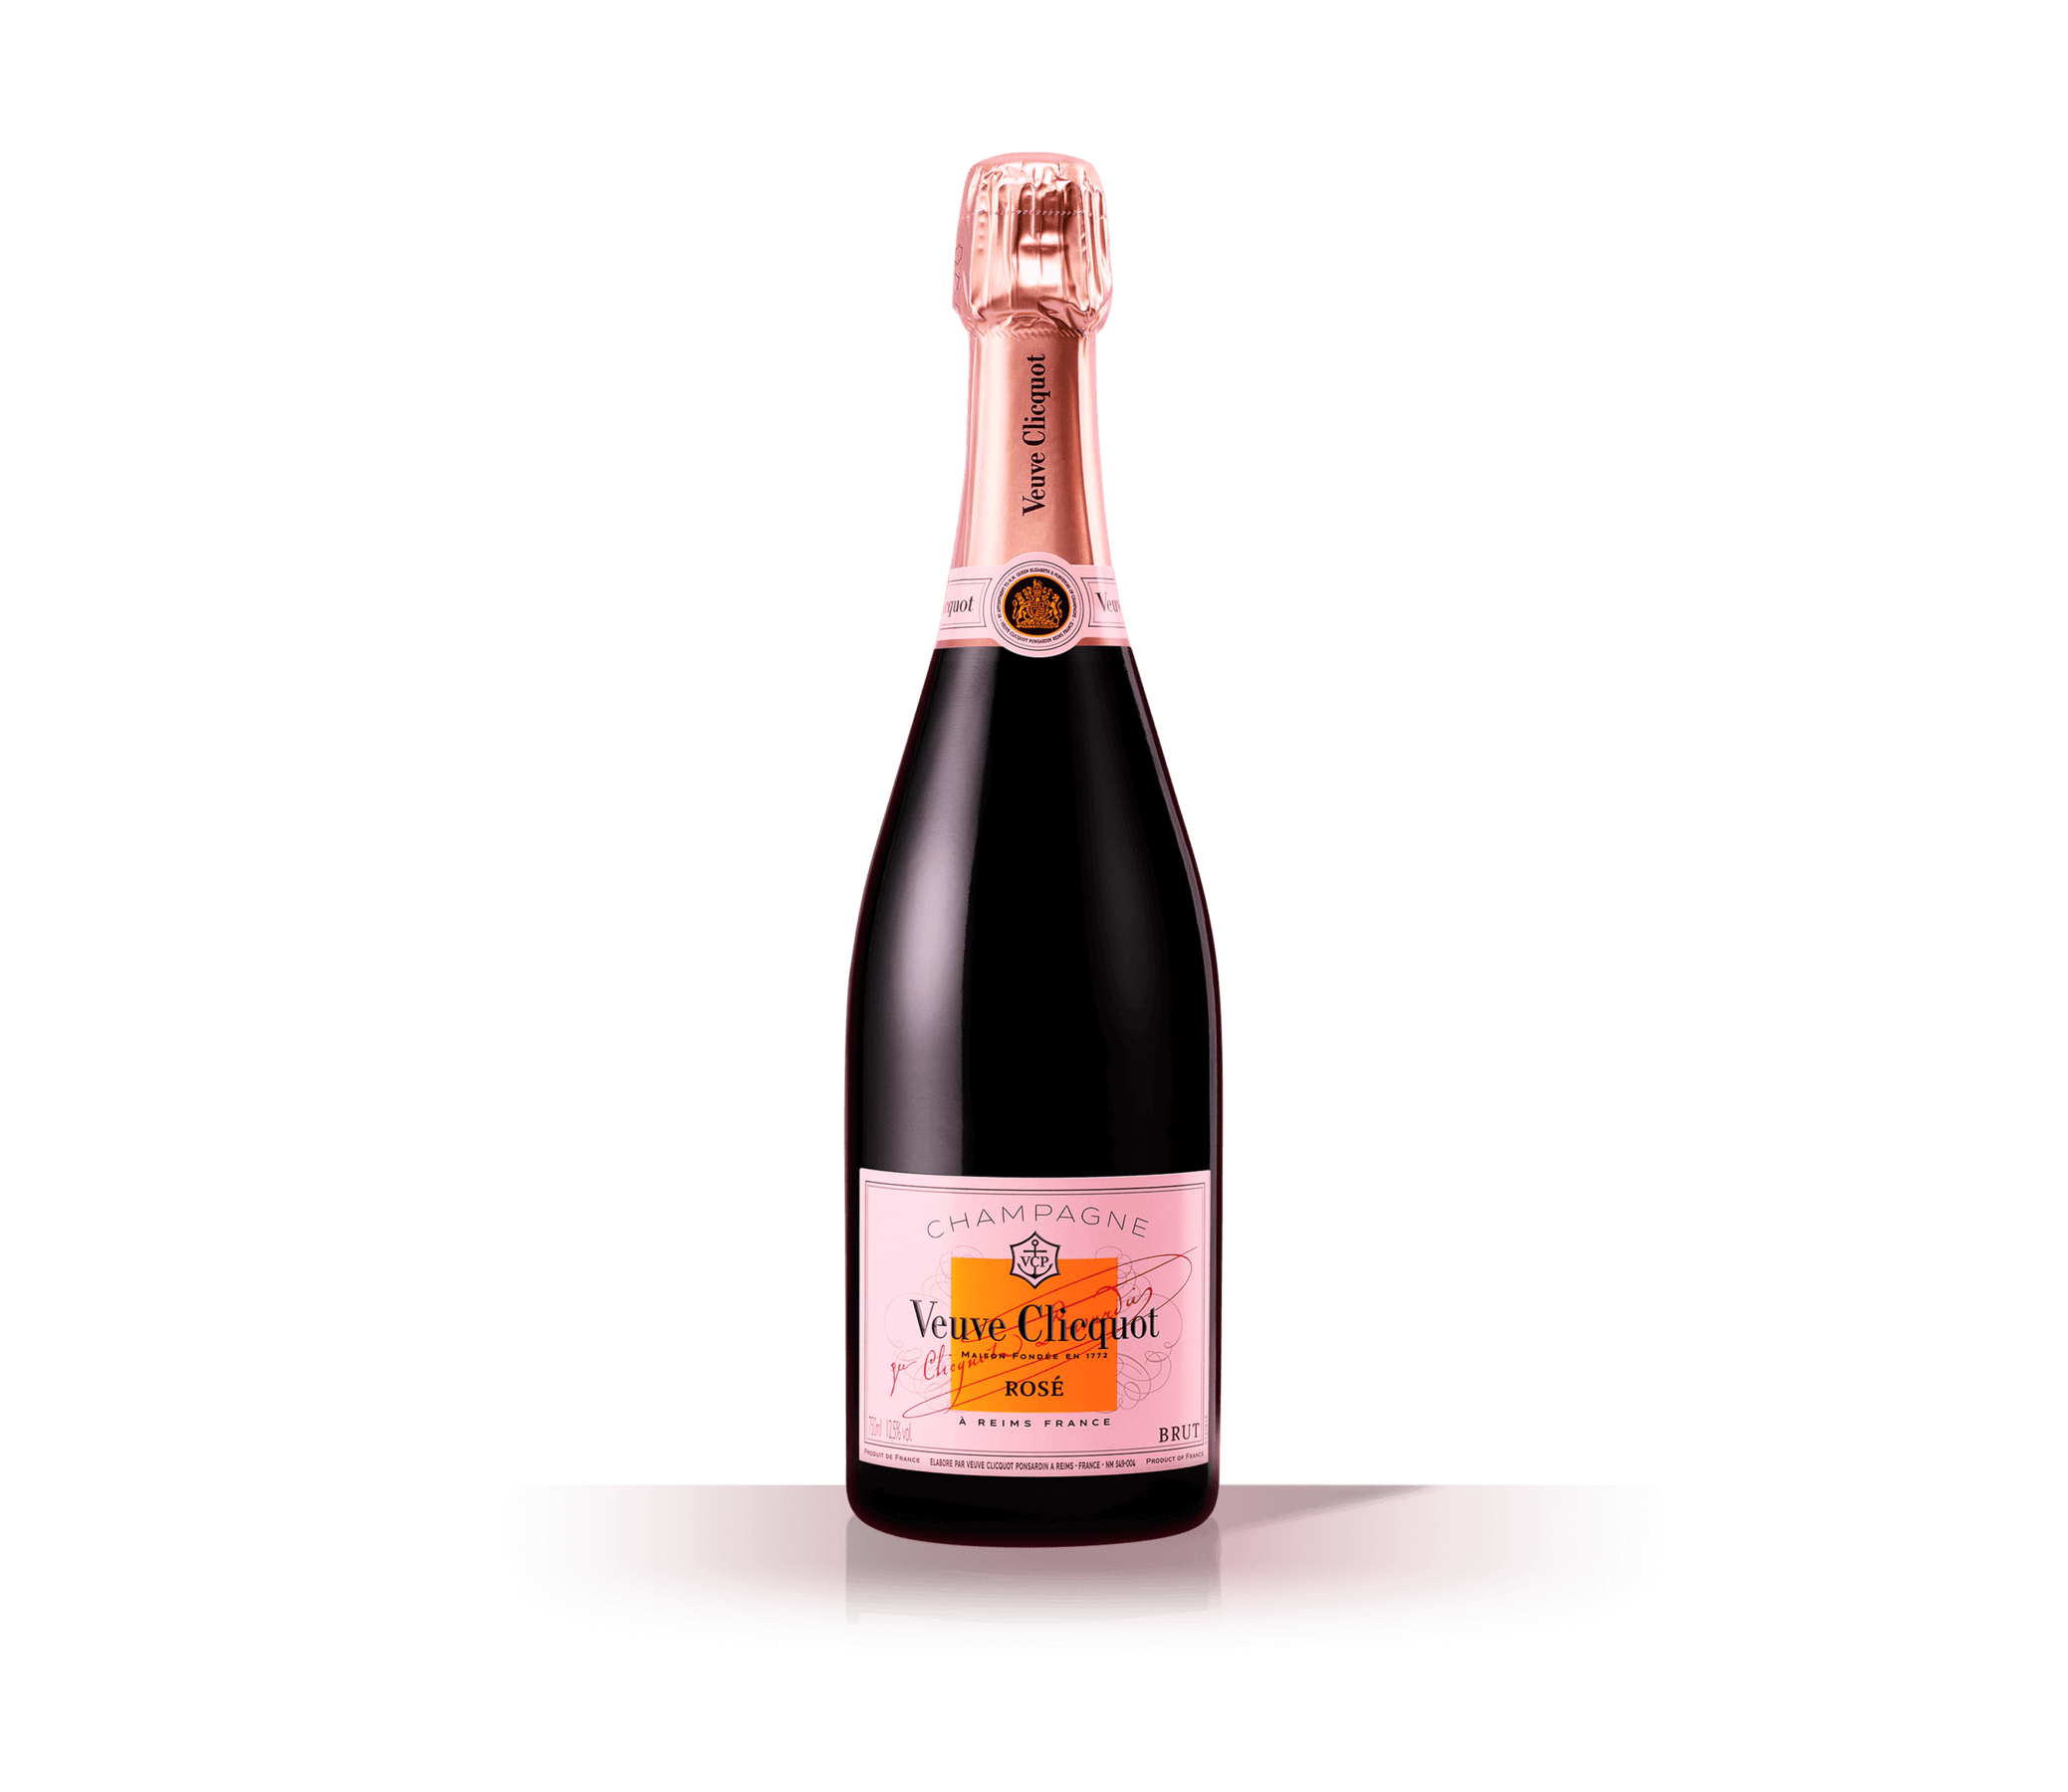 Veuve Clicquot Brut Rose Cuvee Reserve Champagne NV (750ml)